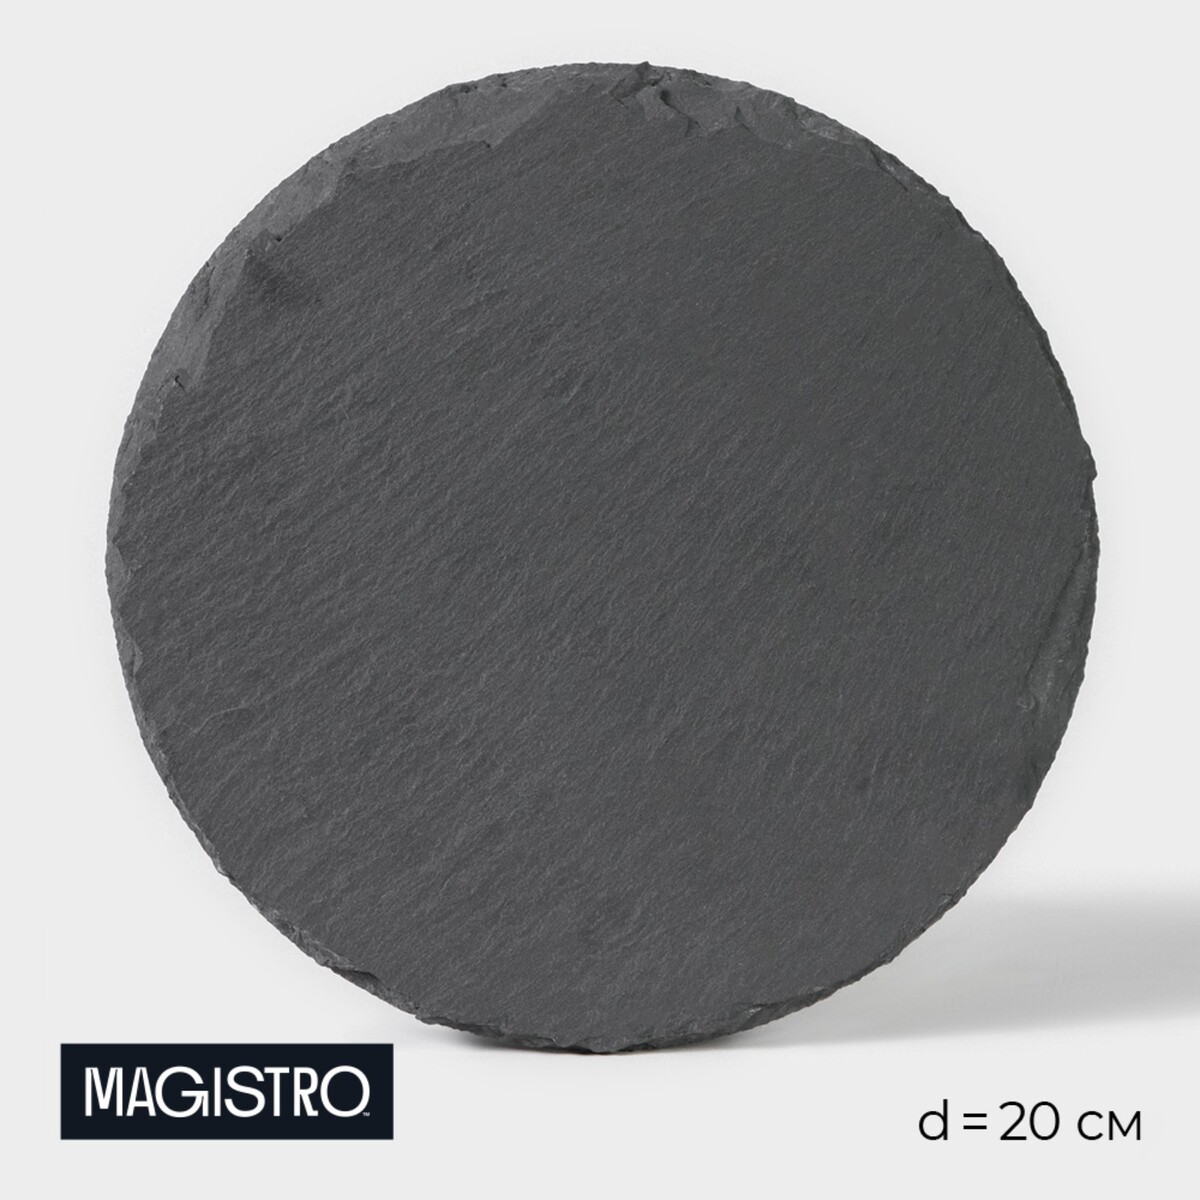 Доска для подачи из сланца magistro valley, d=20 см доска для подачи magistro forest dream 33×20 см акация мрамор